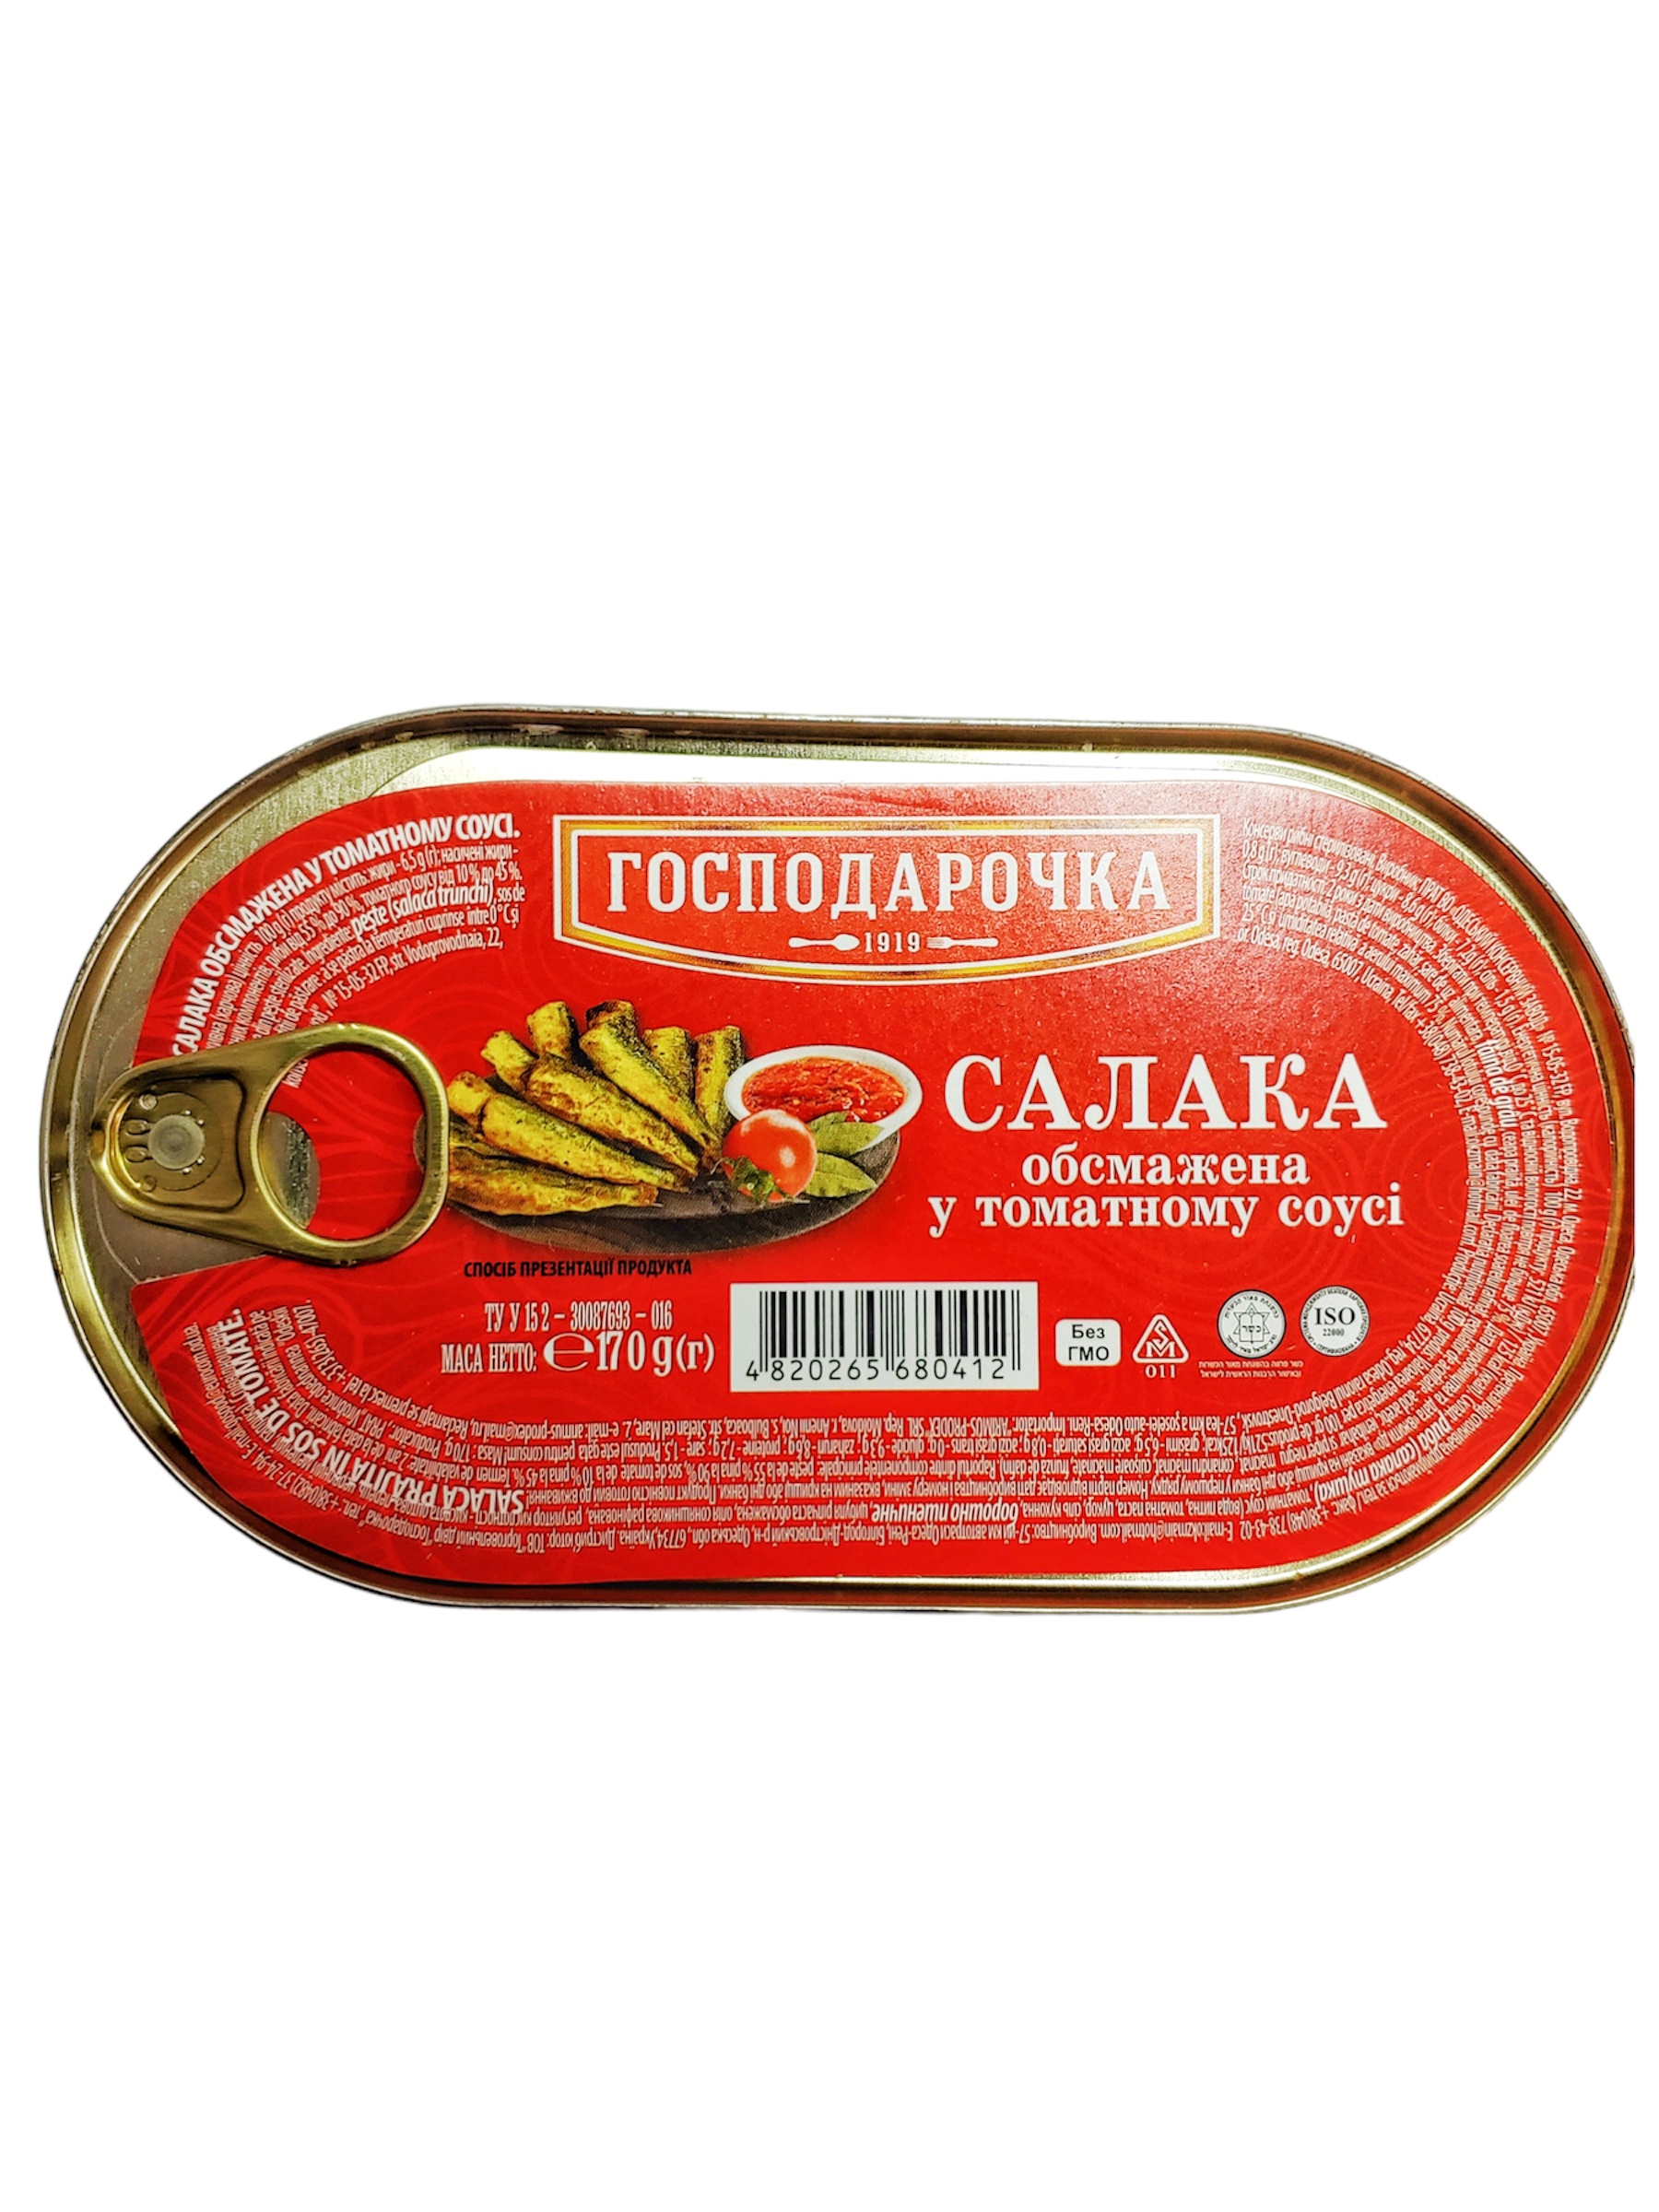 Салака обсмажена в томатному соусі 170г